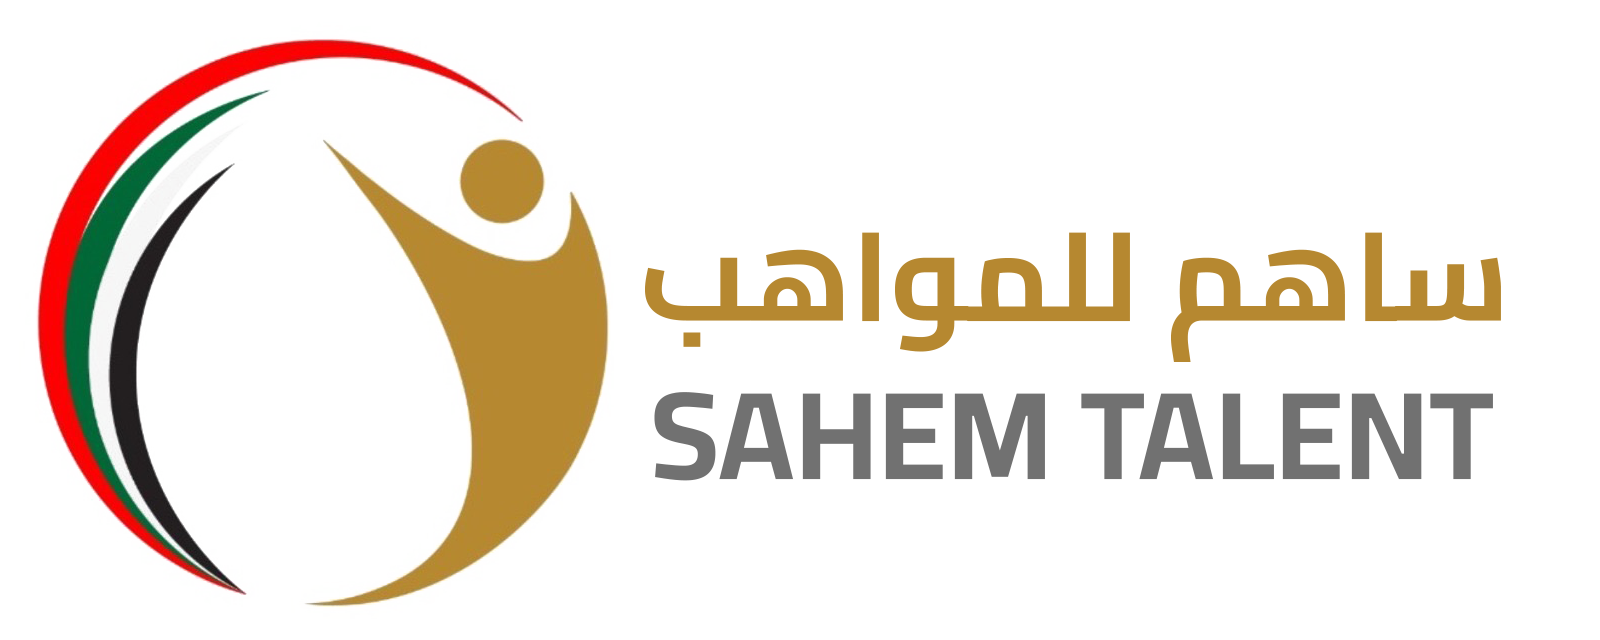 SAHEM TALENT